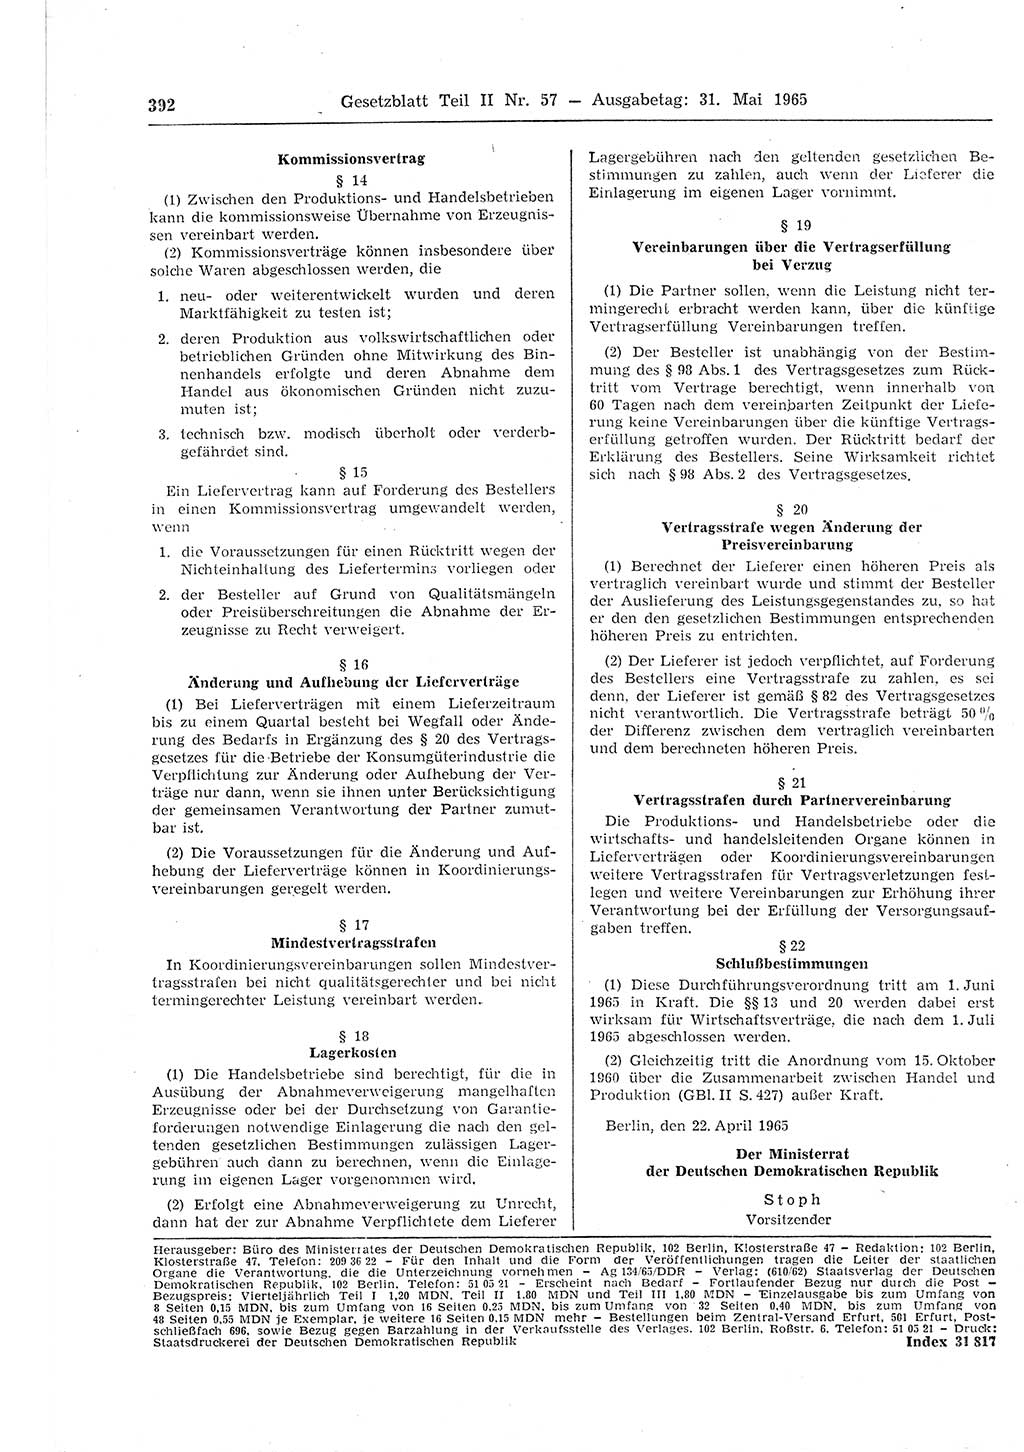 Gesetzblatt (GBl.) der Deutschen Demokratischen Republik (DDR) Teil ⅠⅠ 1965, Seite 392 (GBl. DDR ⅠⅠ 1965, S. 392)